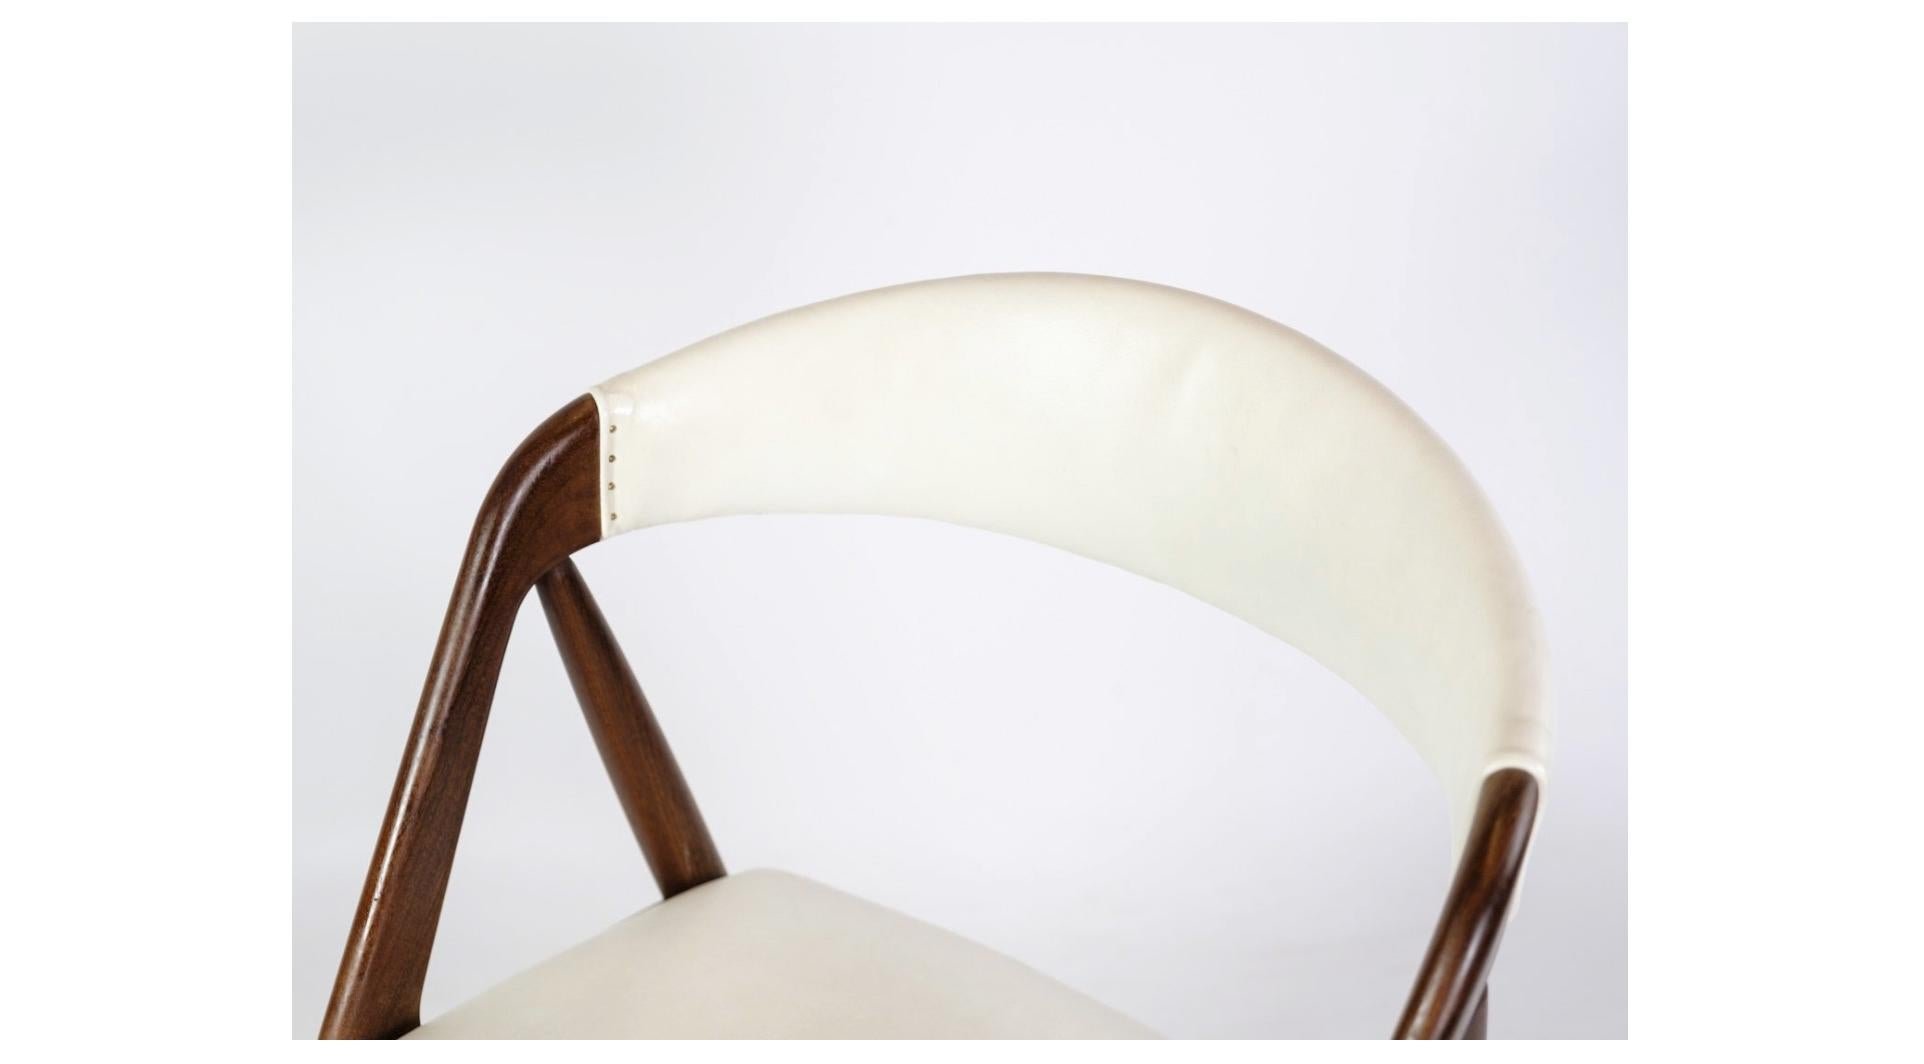 Der von Kai Kristiansen entworfene Stuhl aus Teakholz, Modell 31 aus den 1960er Jahren und mit weißem Leder gepolstert, ist ein bemerkenswertes Möbelstück, das die skandinavische Designtradition auf schönste Weise repräsentiert.

Die Entwürfe von